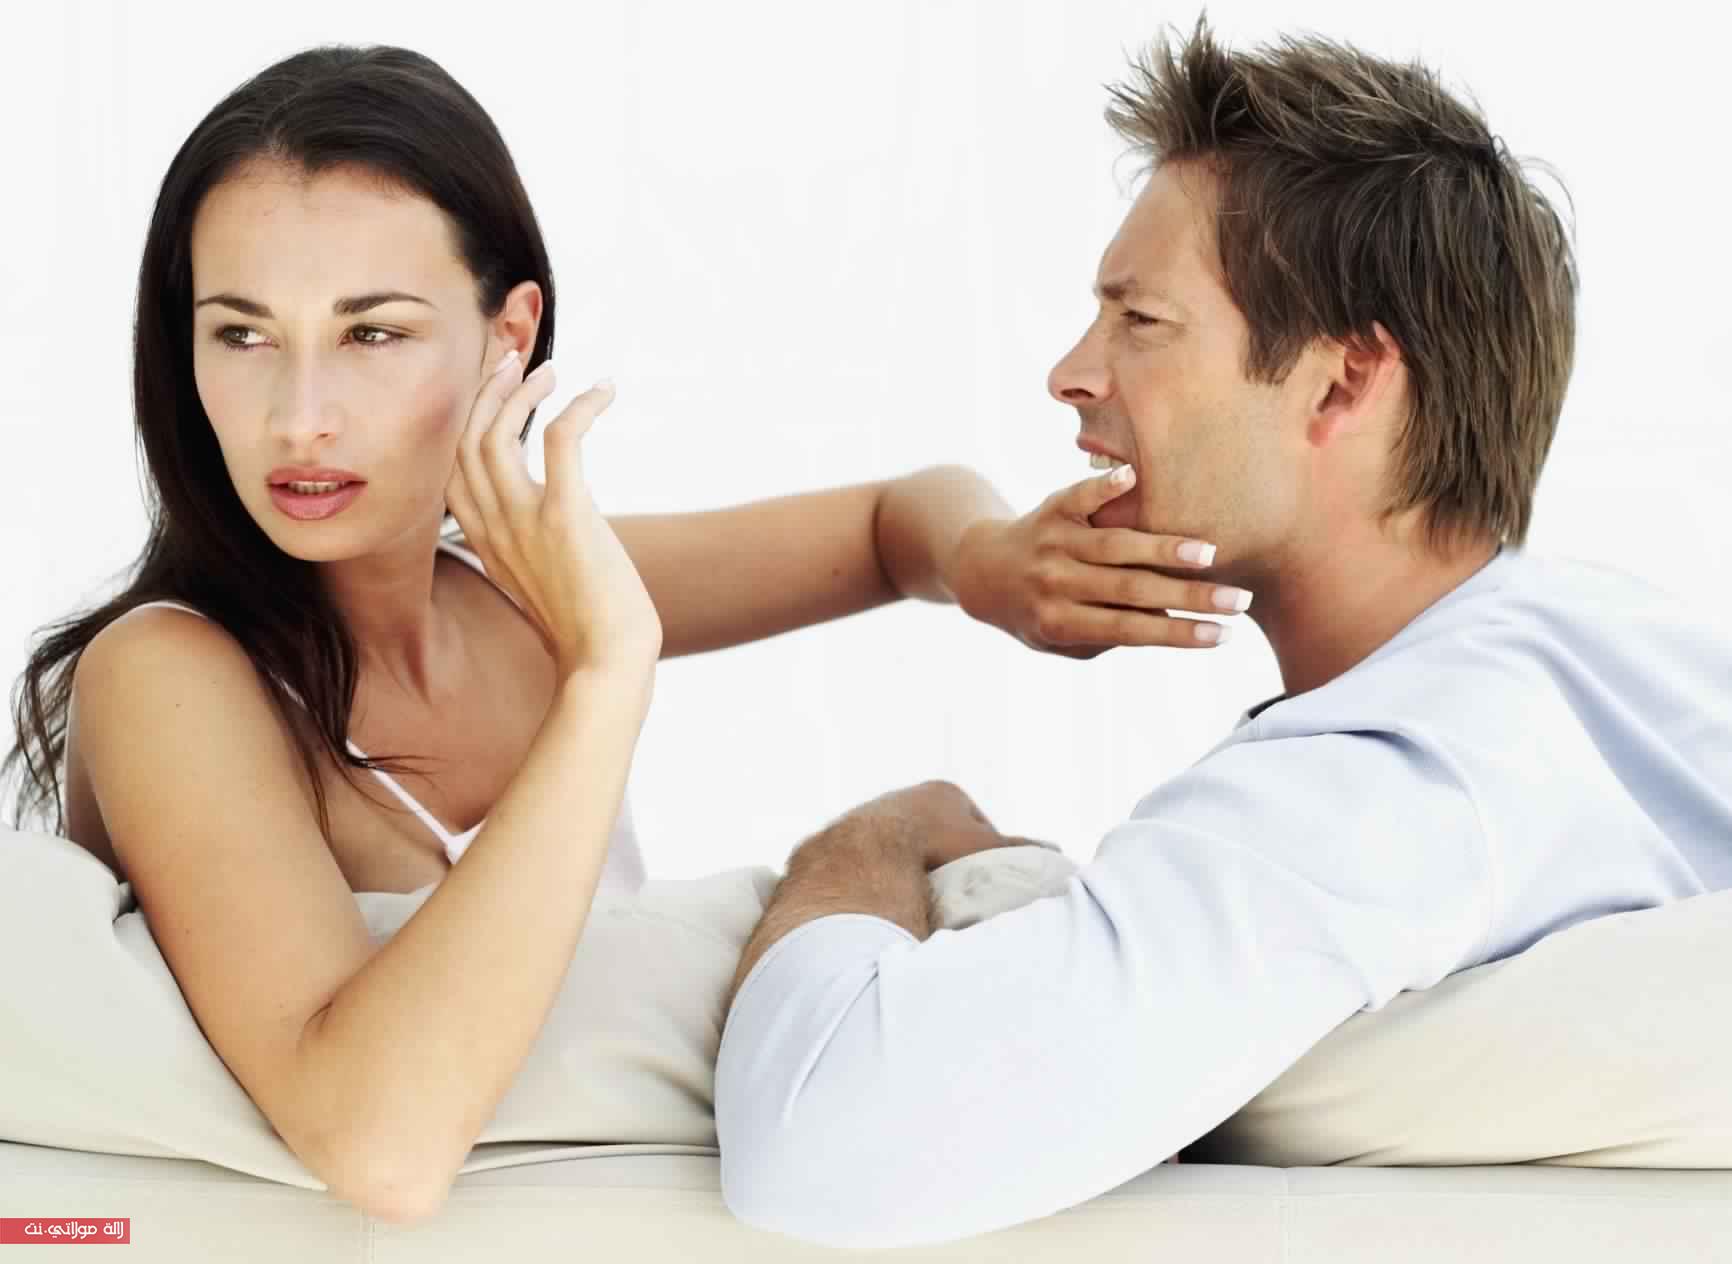 Женщин старше мужчины психология отношений. Мужчина и женщина ссорятся. Психология отношений между мужчиной и женщиной. Ссооа мужчины и женщин. Взаимоотношения мужчины и женщины.